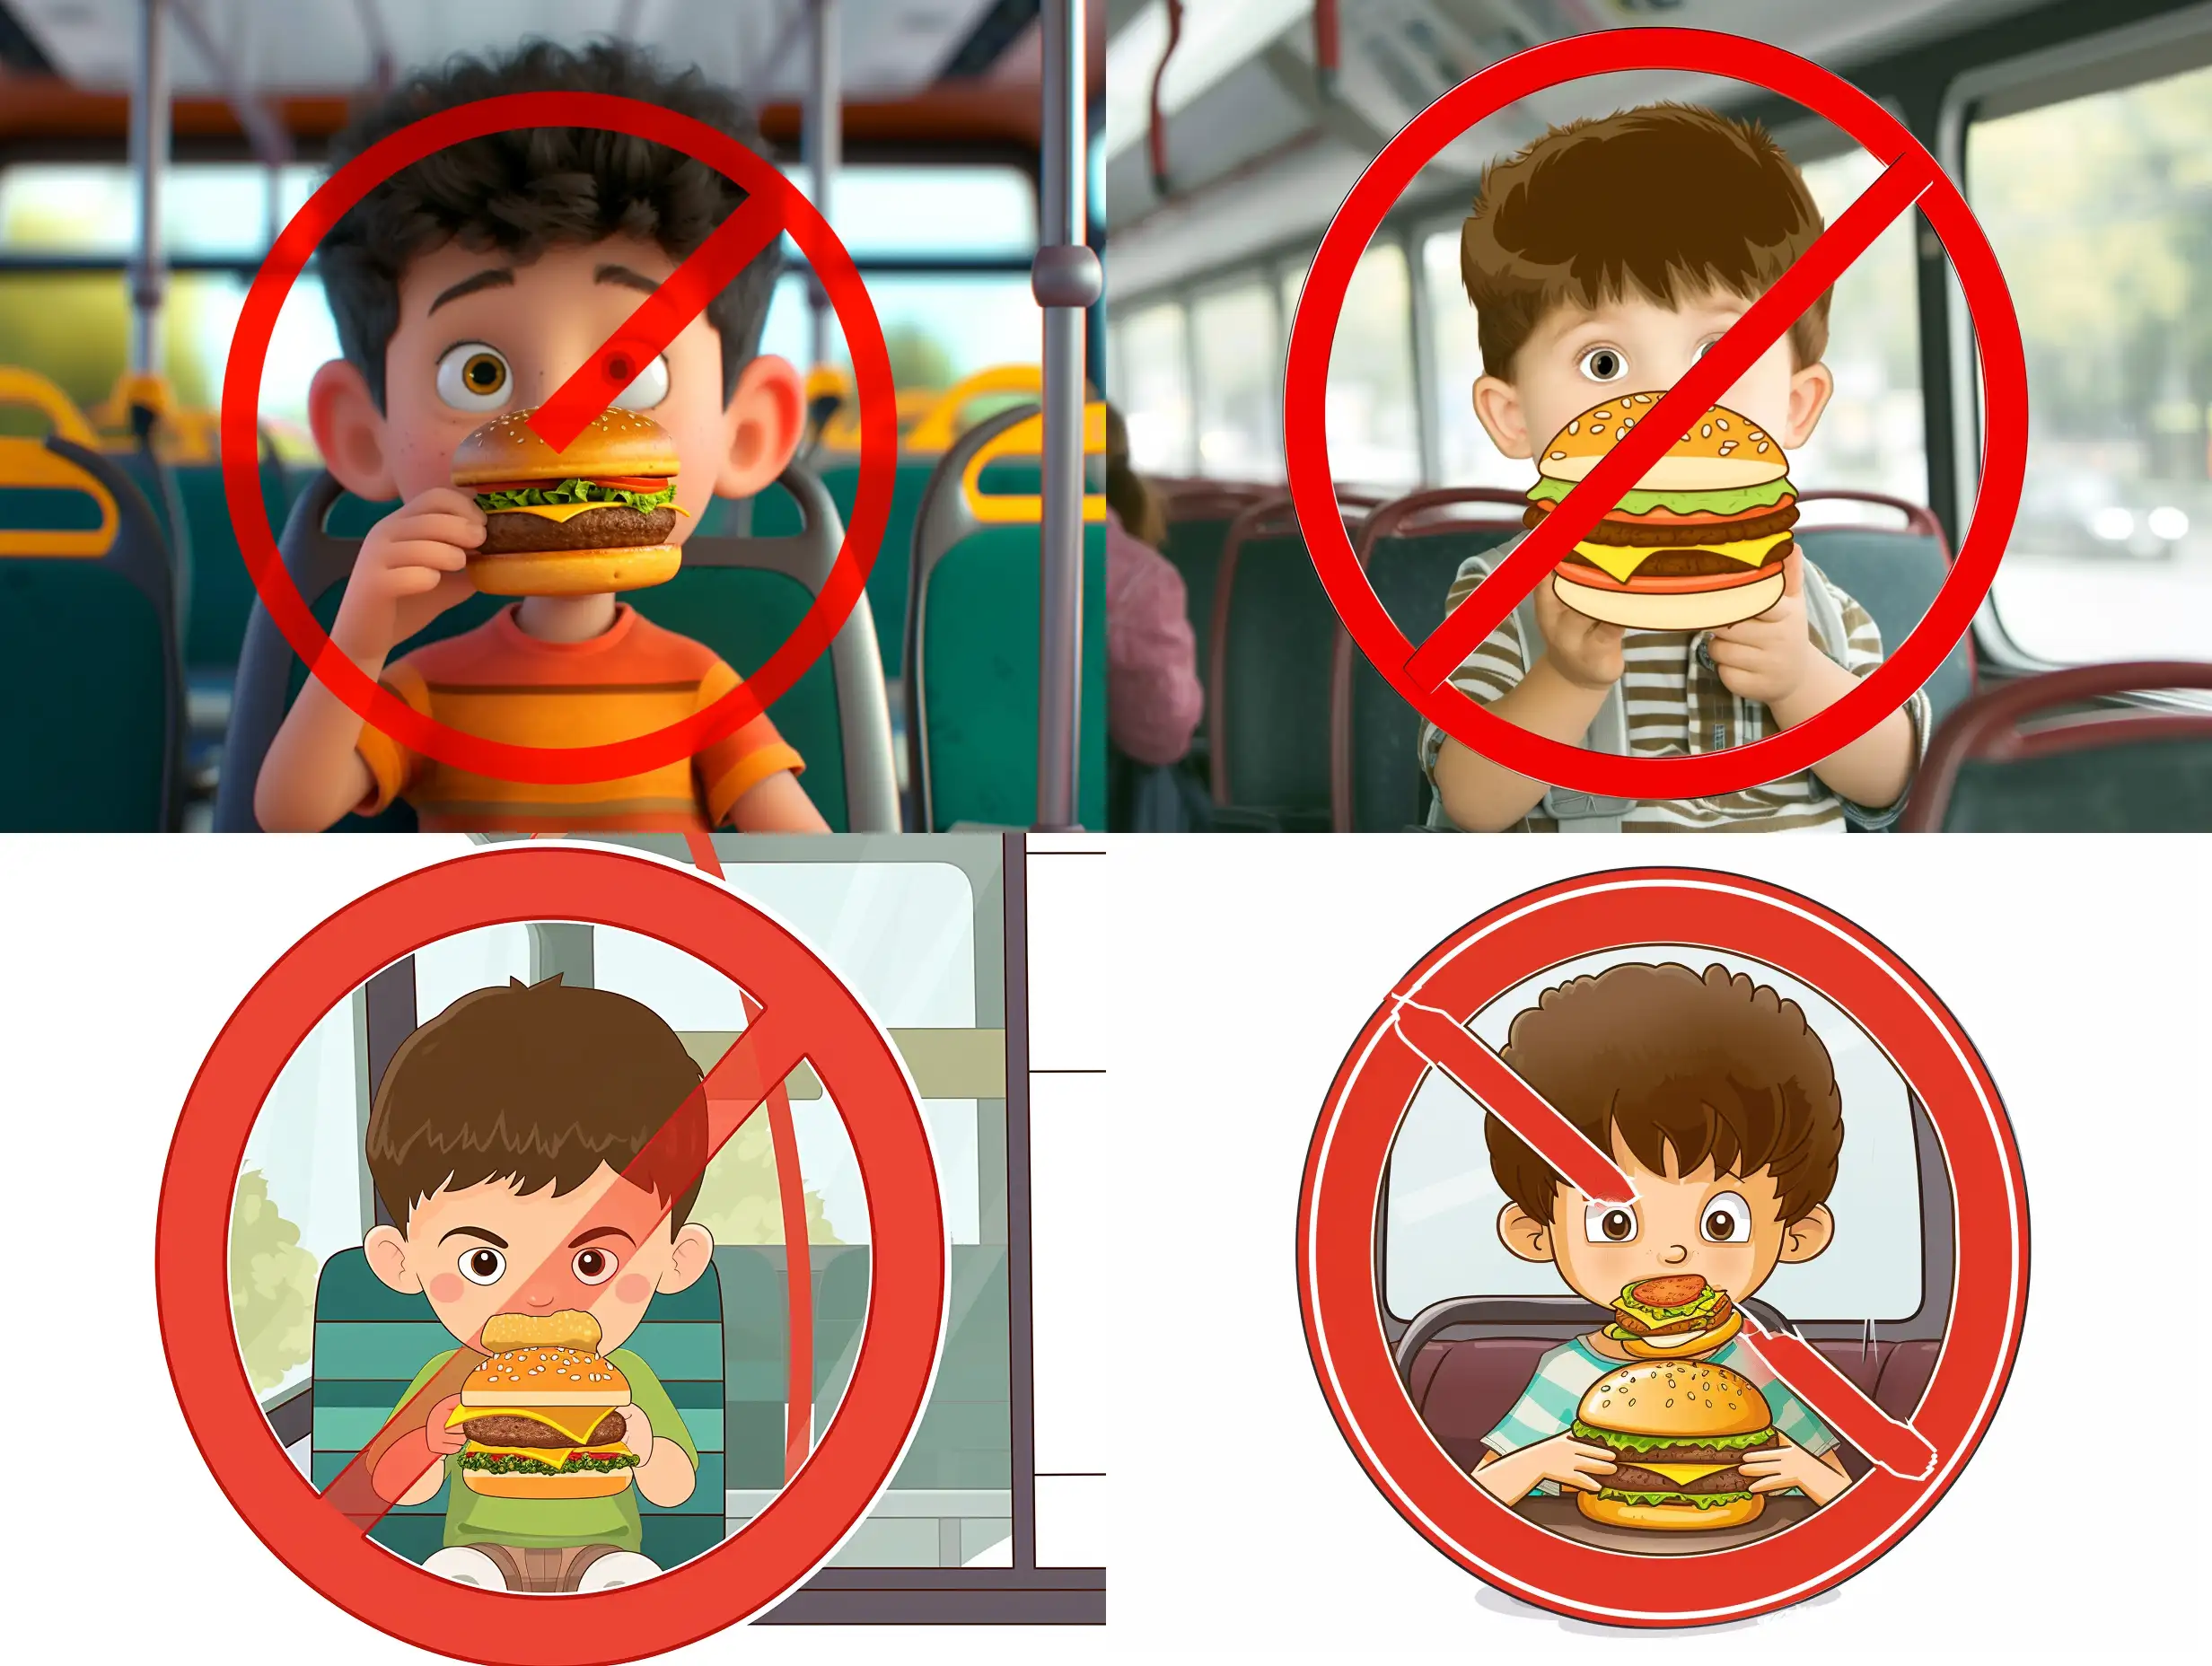 Cheerful-Cartoon-Boy-Enjoying-a-Hamburger-Ride